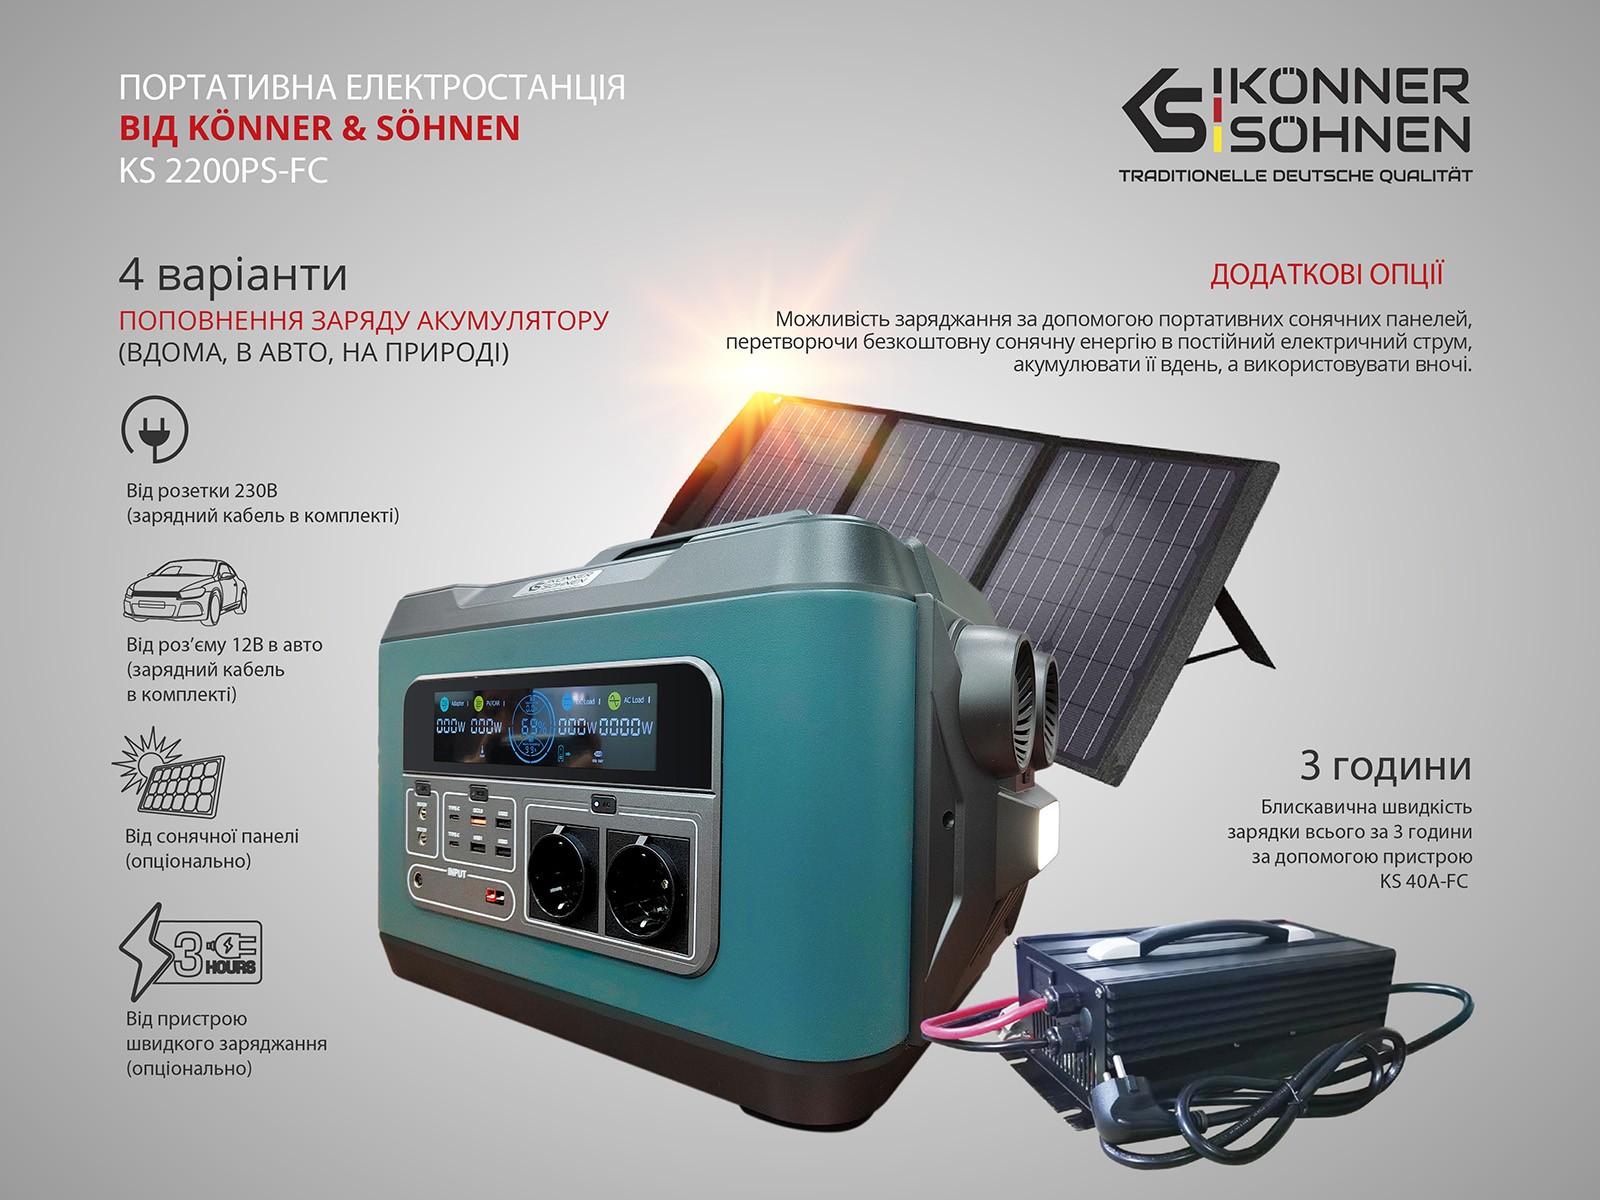 Портативная зарядная станция Konner&Sohnen KS 2200PS-FC обзор - фото 11